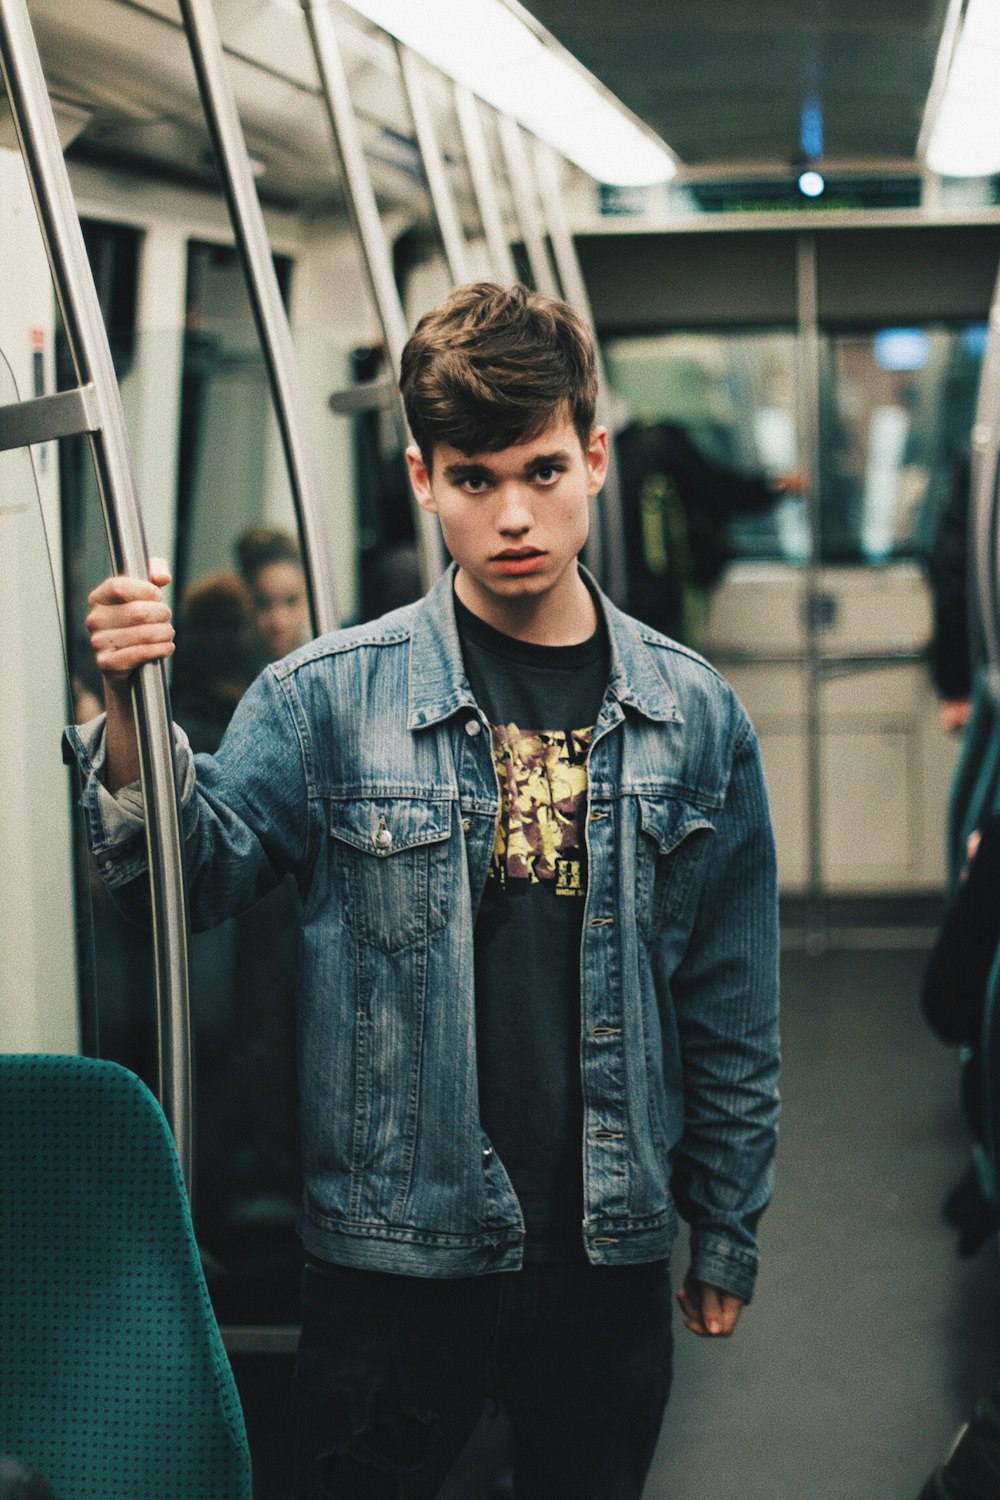 man wearing blue denim jacket standing inside train